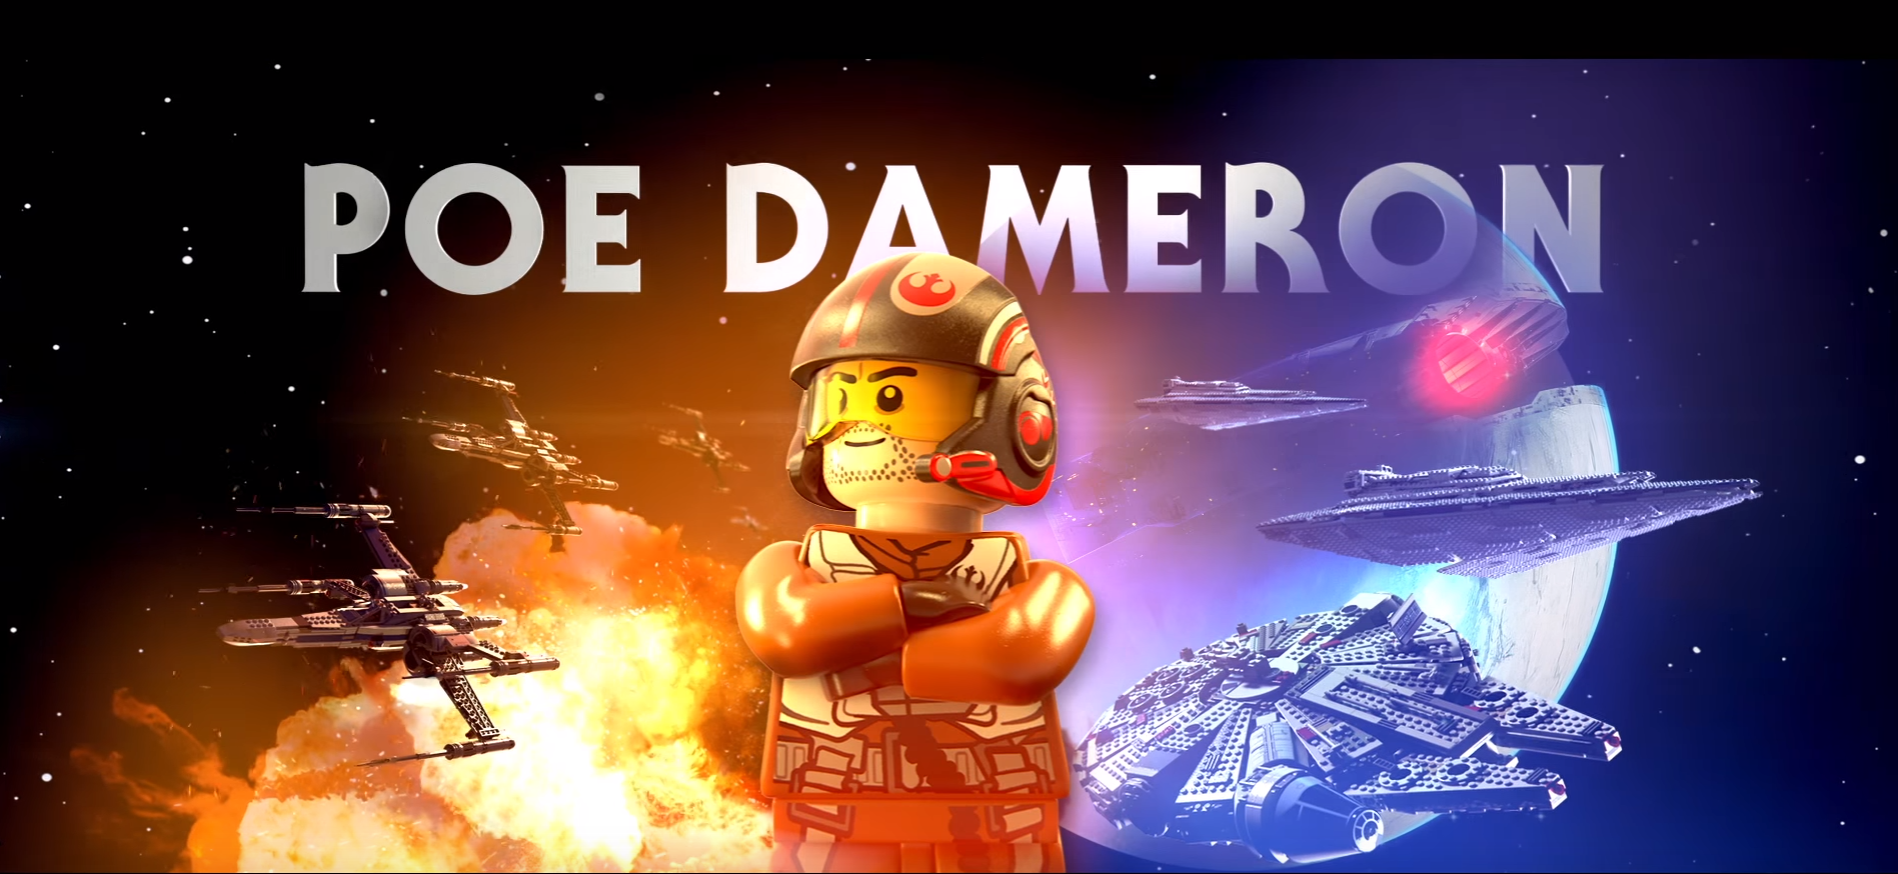 Poe Dameron se presenta en un nuevo tráiler de Lego Star Wars: El despertar de la fuerza